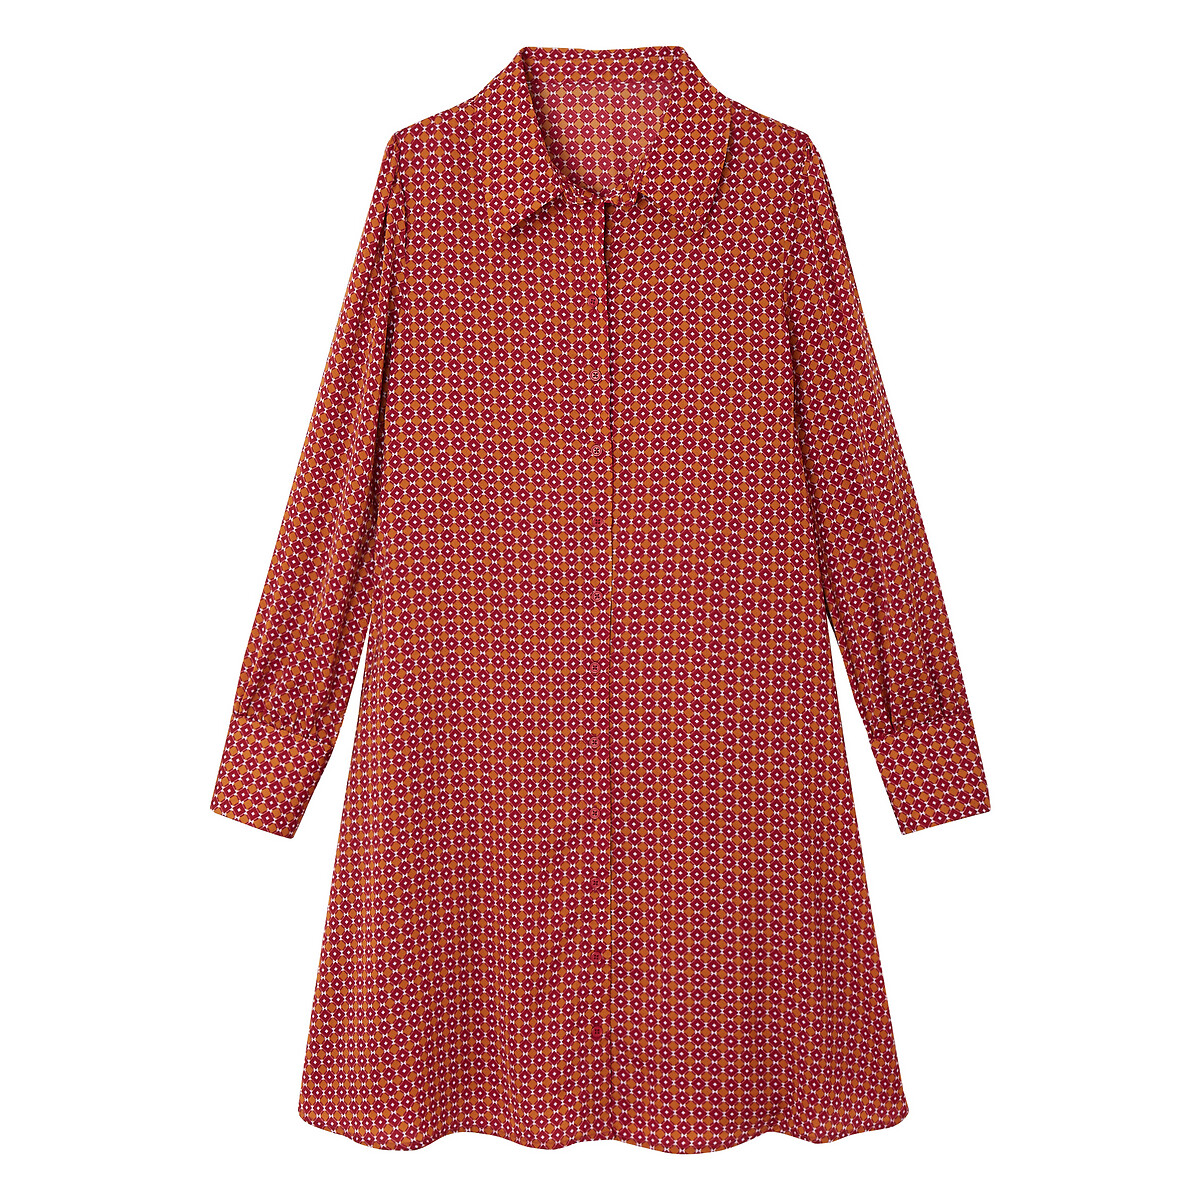 Платье-рубашка La Redoute С длинными рукавами с принтом 50 (FR) - 56 (RUS) другие, размер 50 (FR) - 56 (RUS) С длинными рукавами с принтом 50 (FR) - 56 (RUS) другие - фото 5